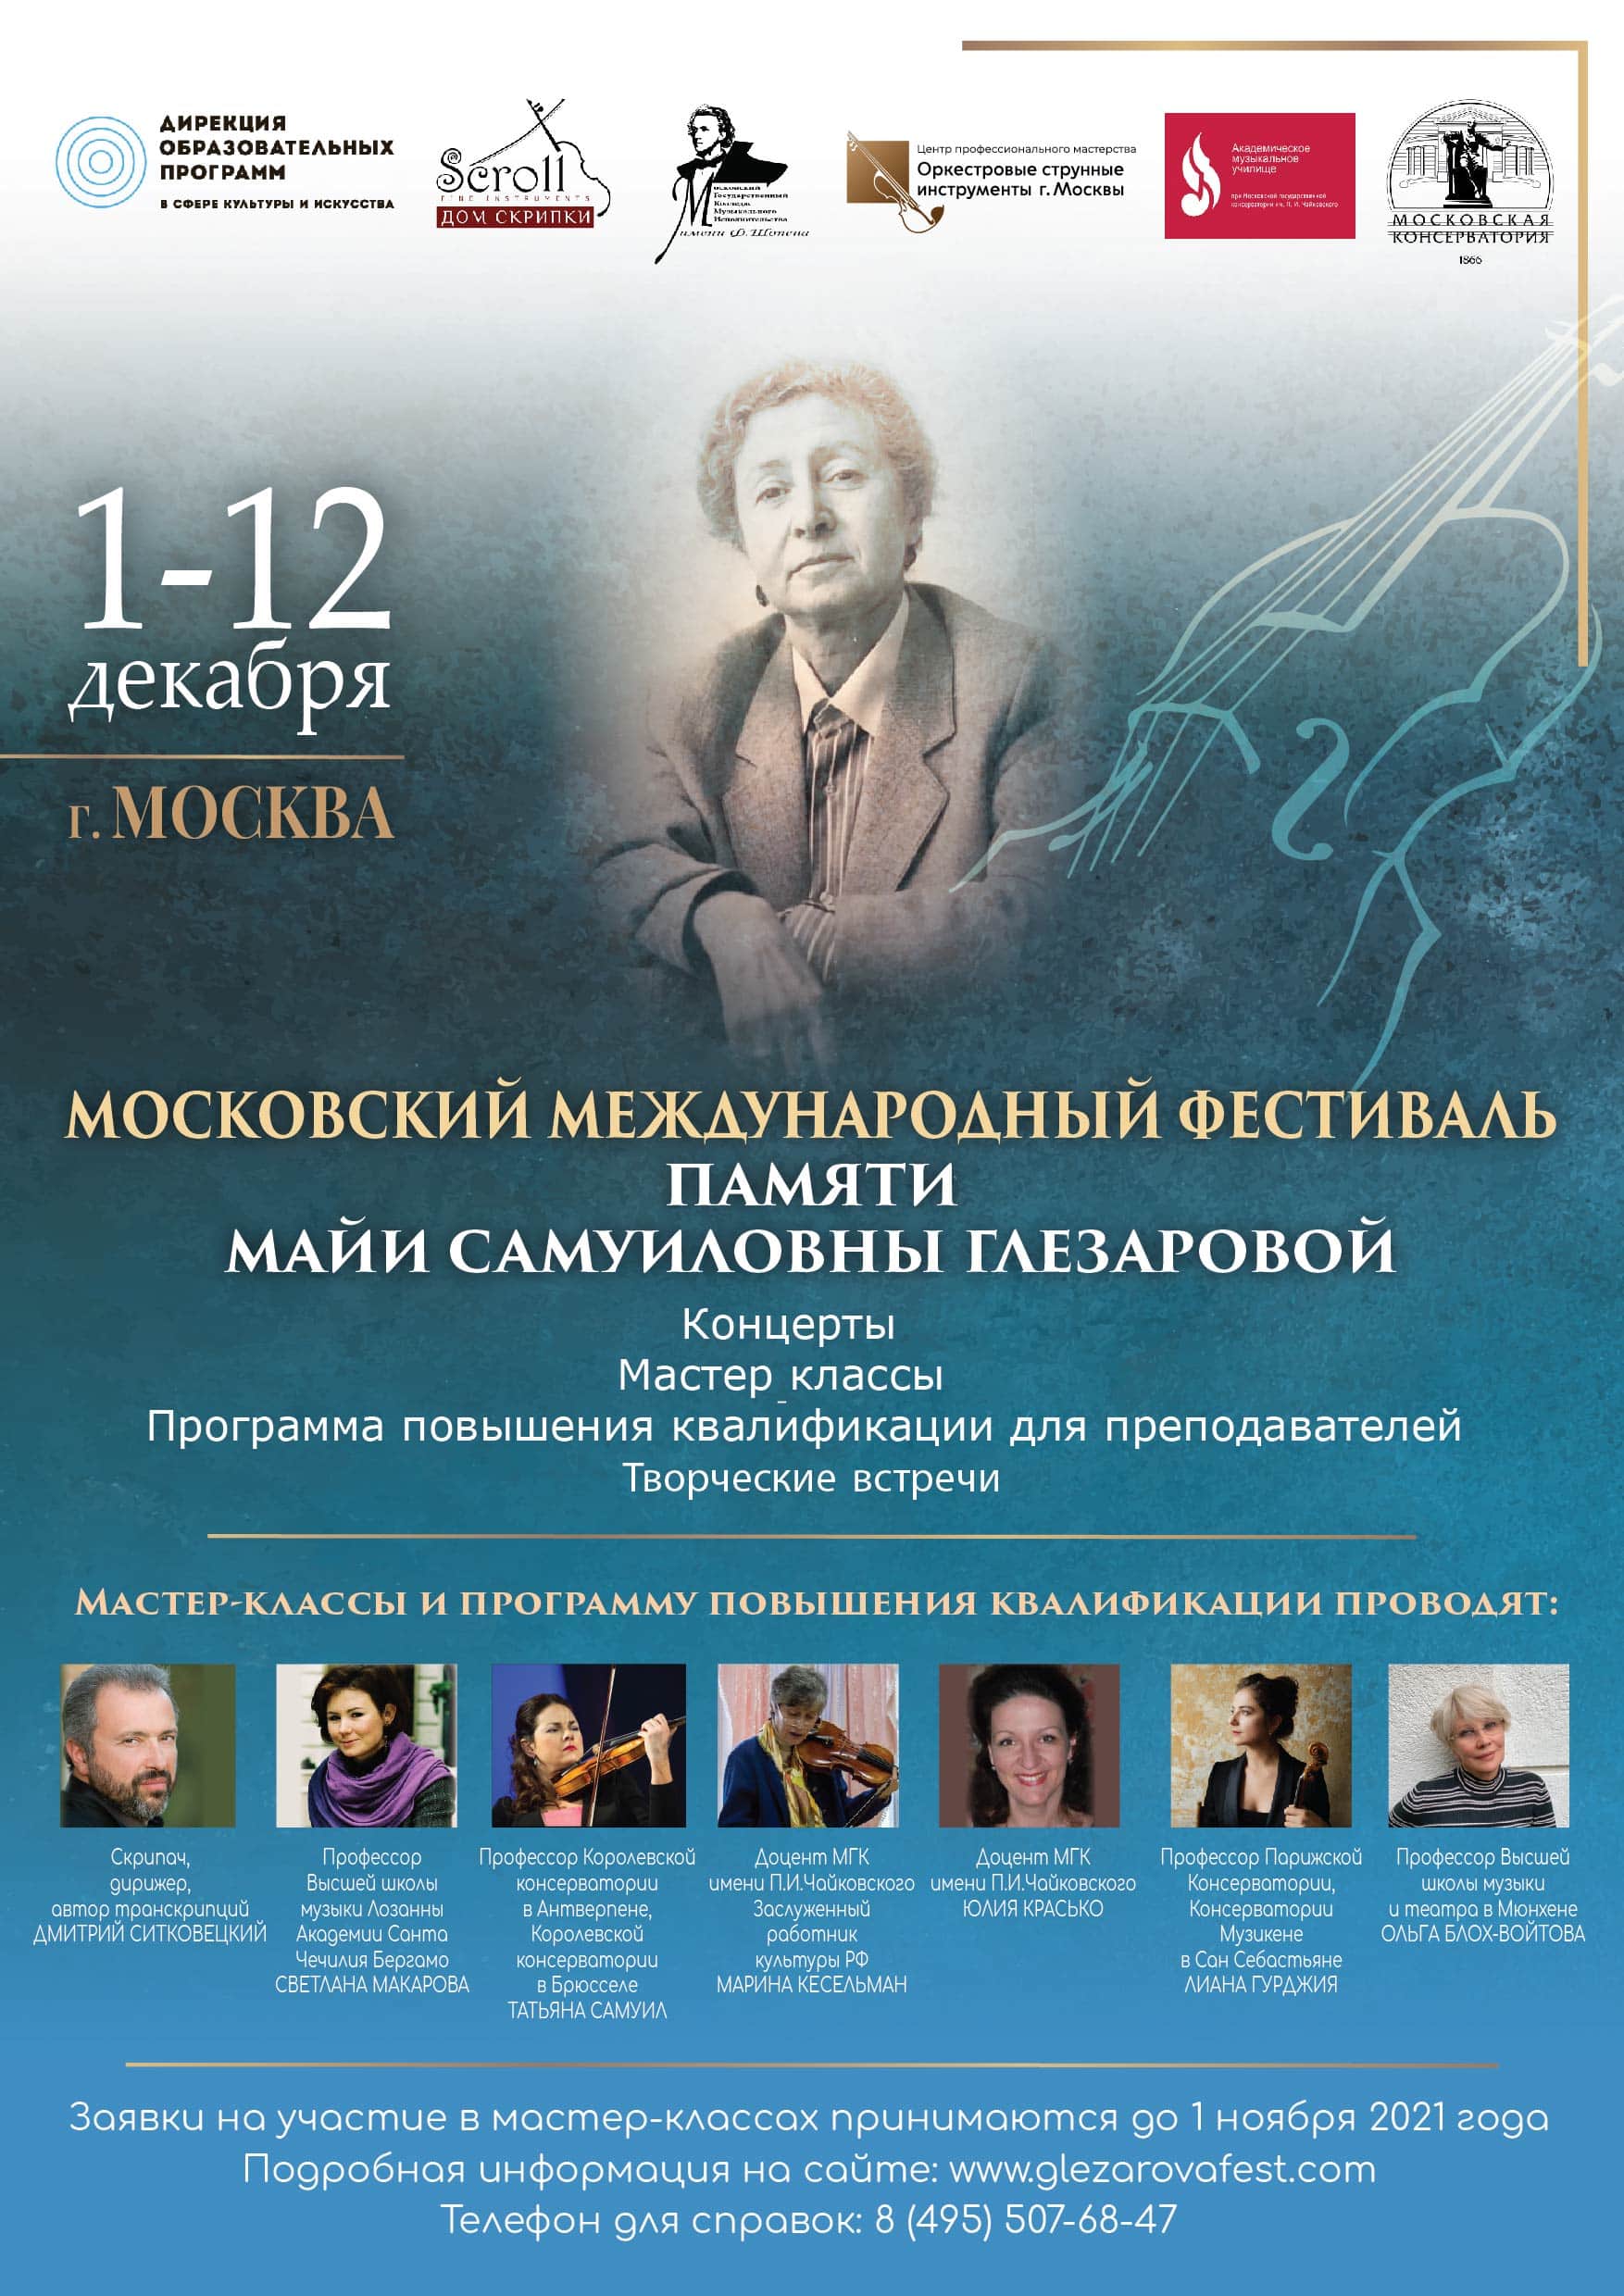 Международный фестиваль памяти Майи Самуиловны Глезаровой пройдет в Москве